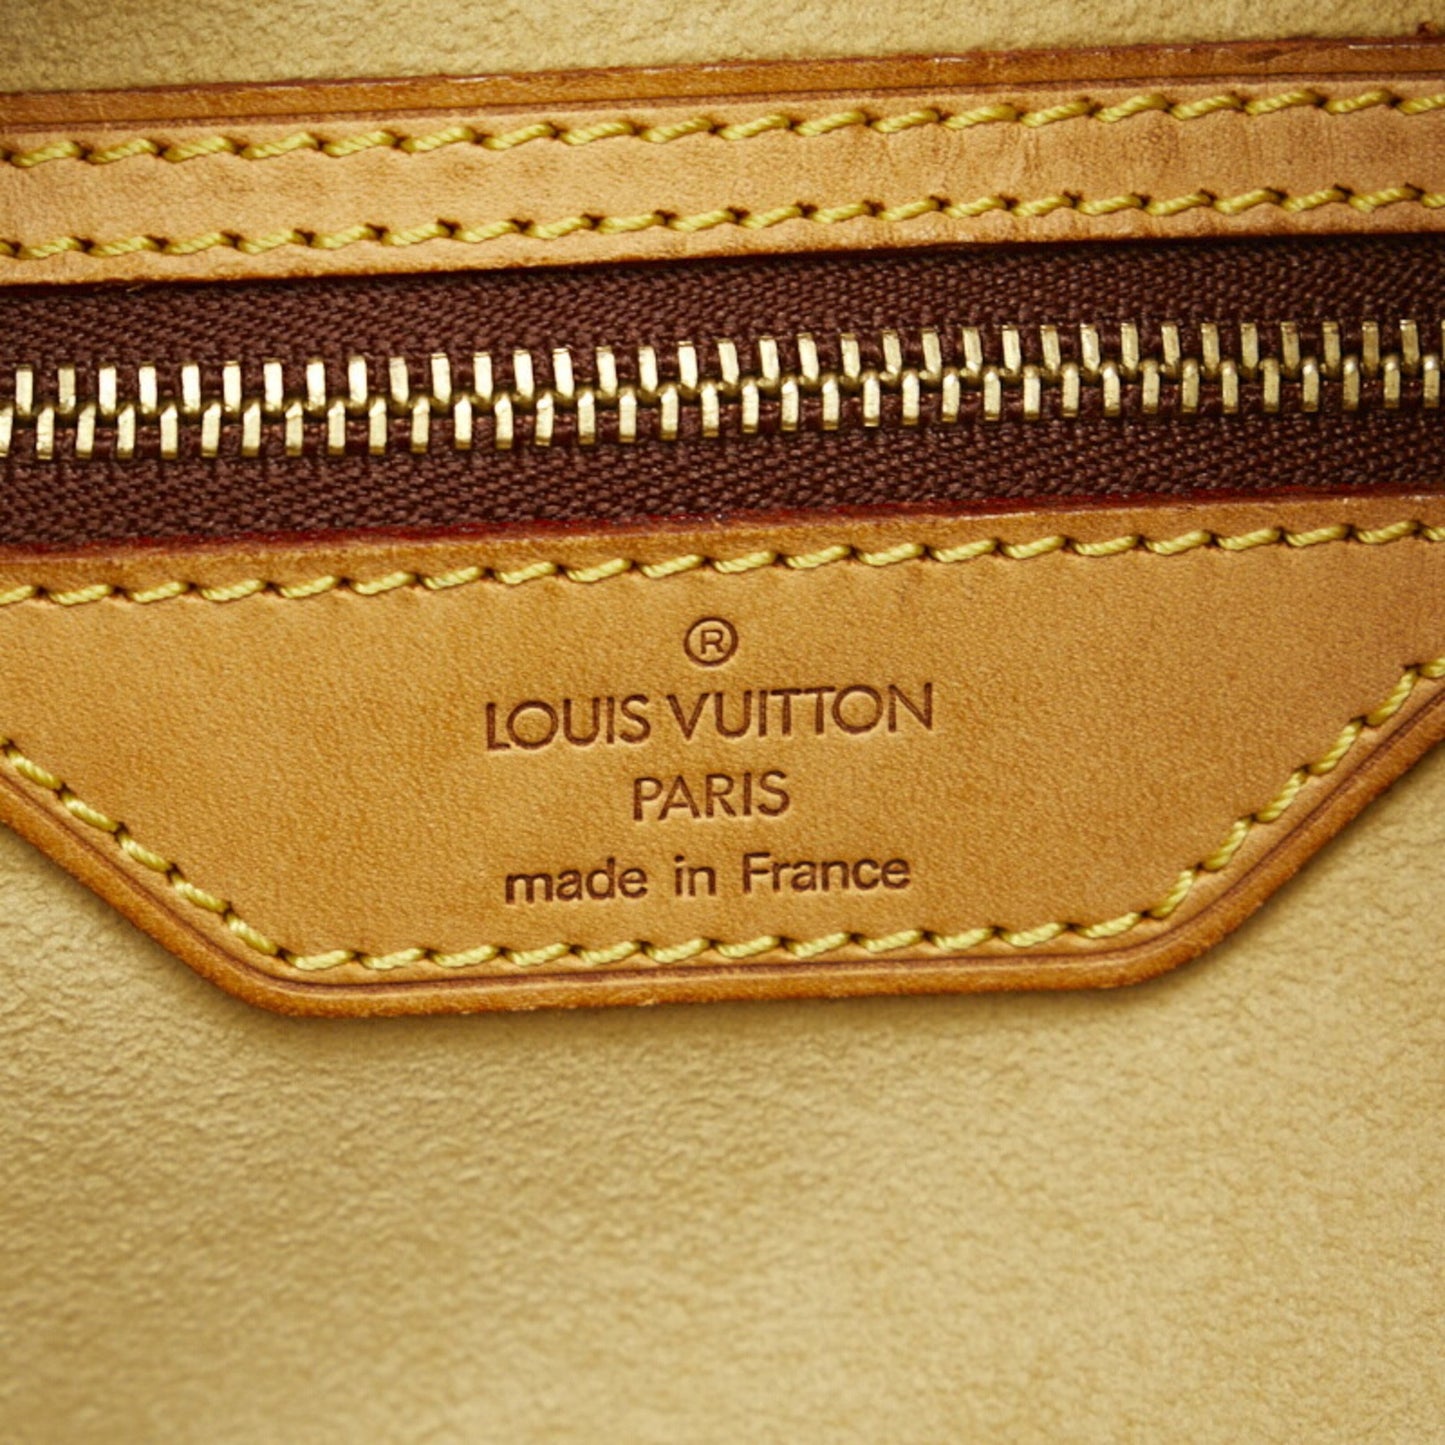 Louis Vuitton Cite